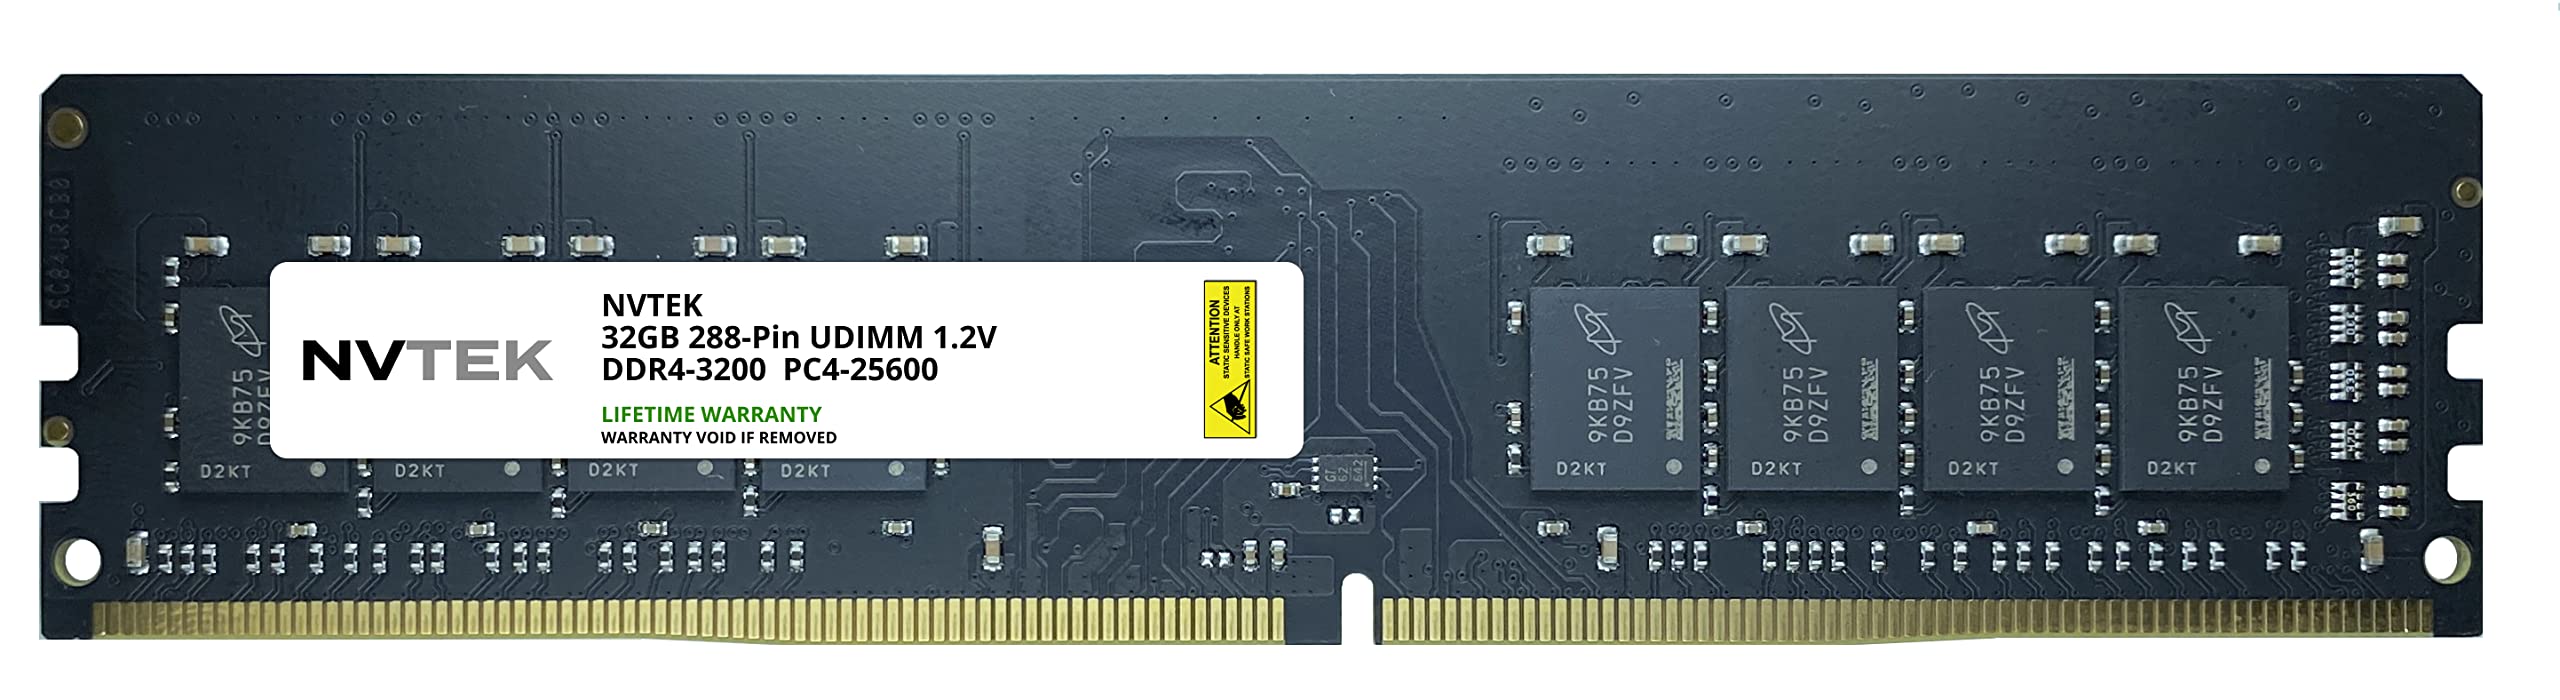 NVTEK 32GB DDR4-3200 PC4-25600 Non-ECC UDIMM デスクトップPC RAM メモリアップグレード並行輸入品